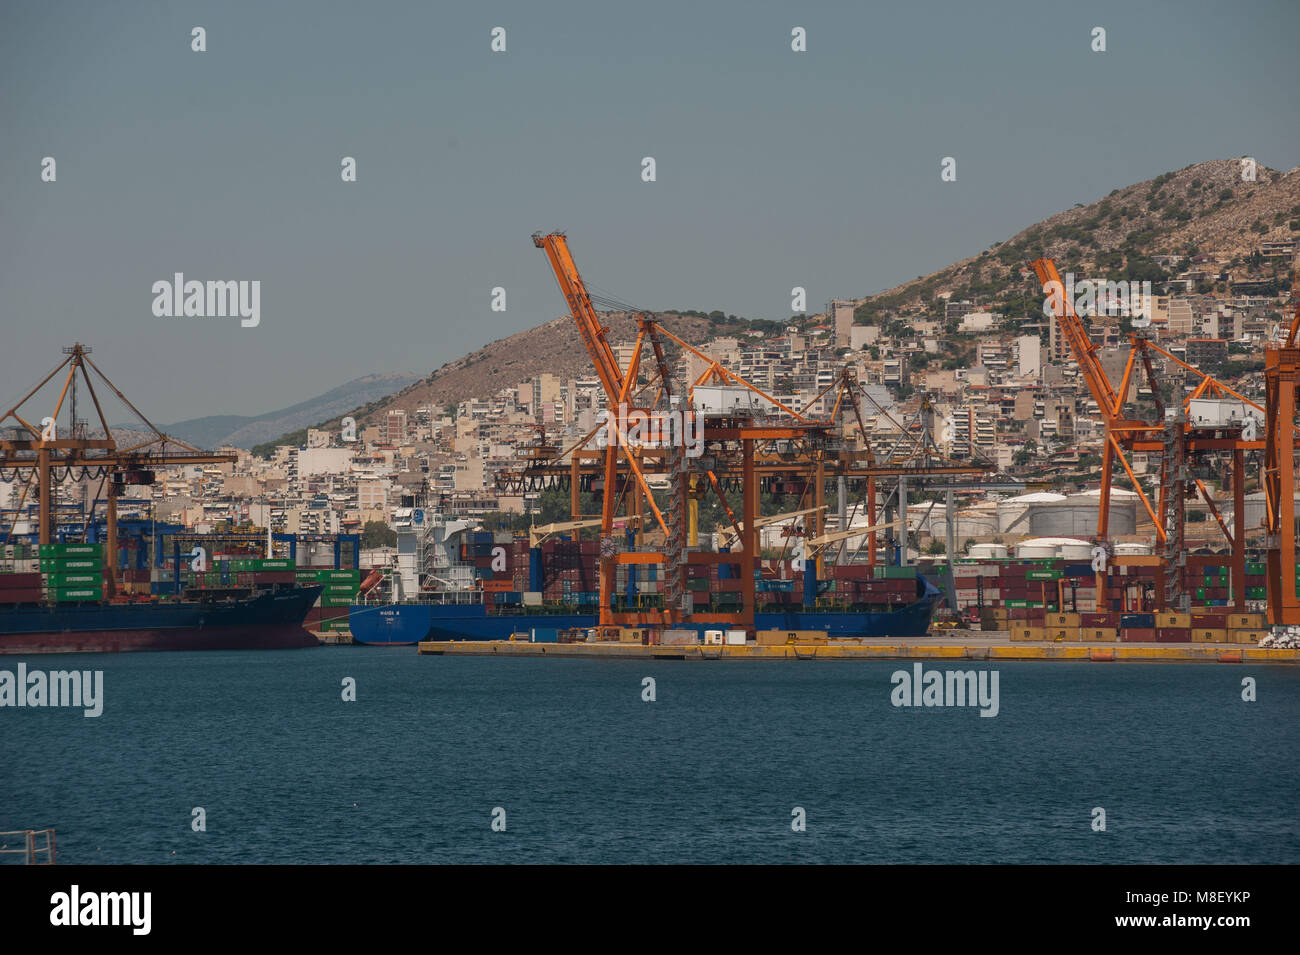 El Pireo, el puerto de Perama. Grecia. Foto de stock